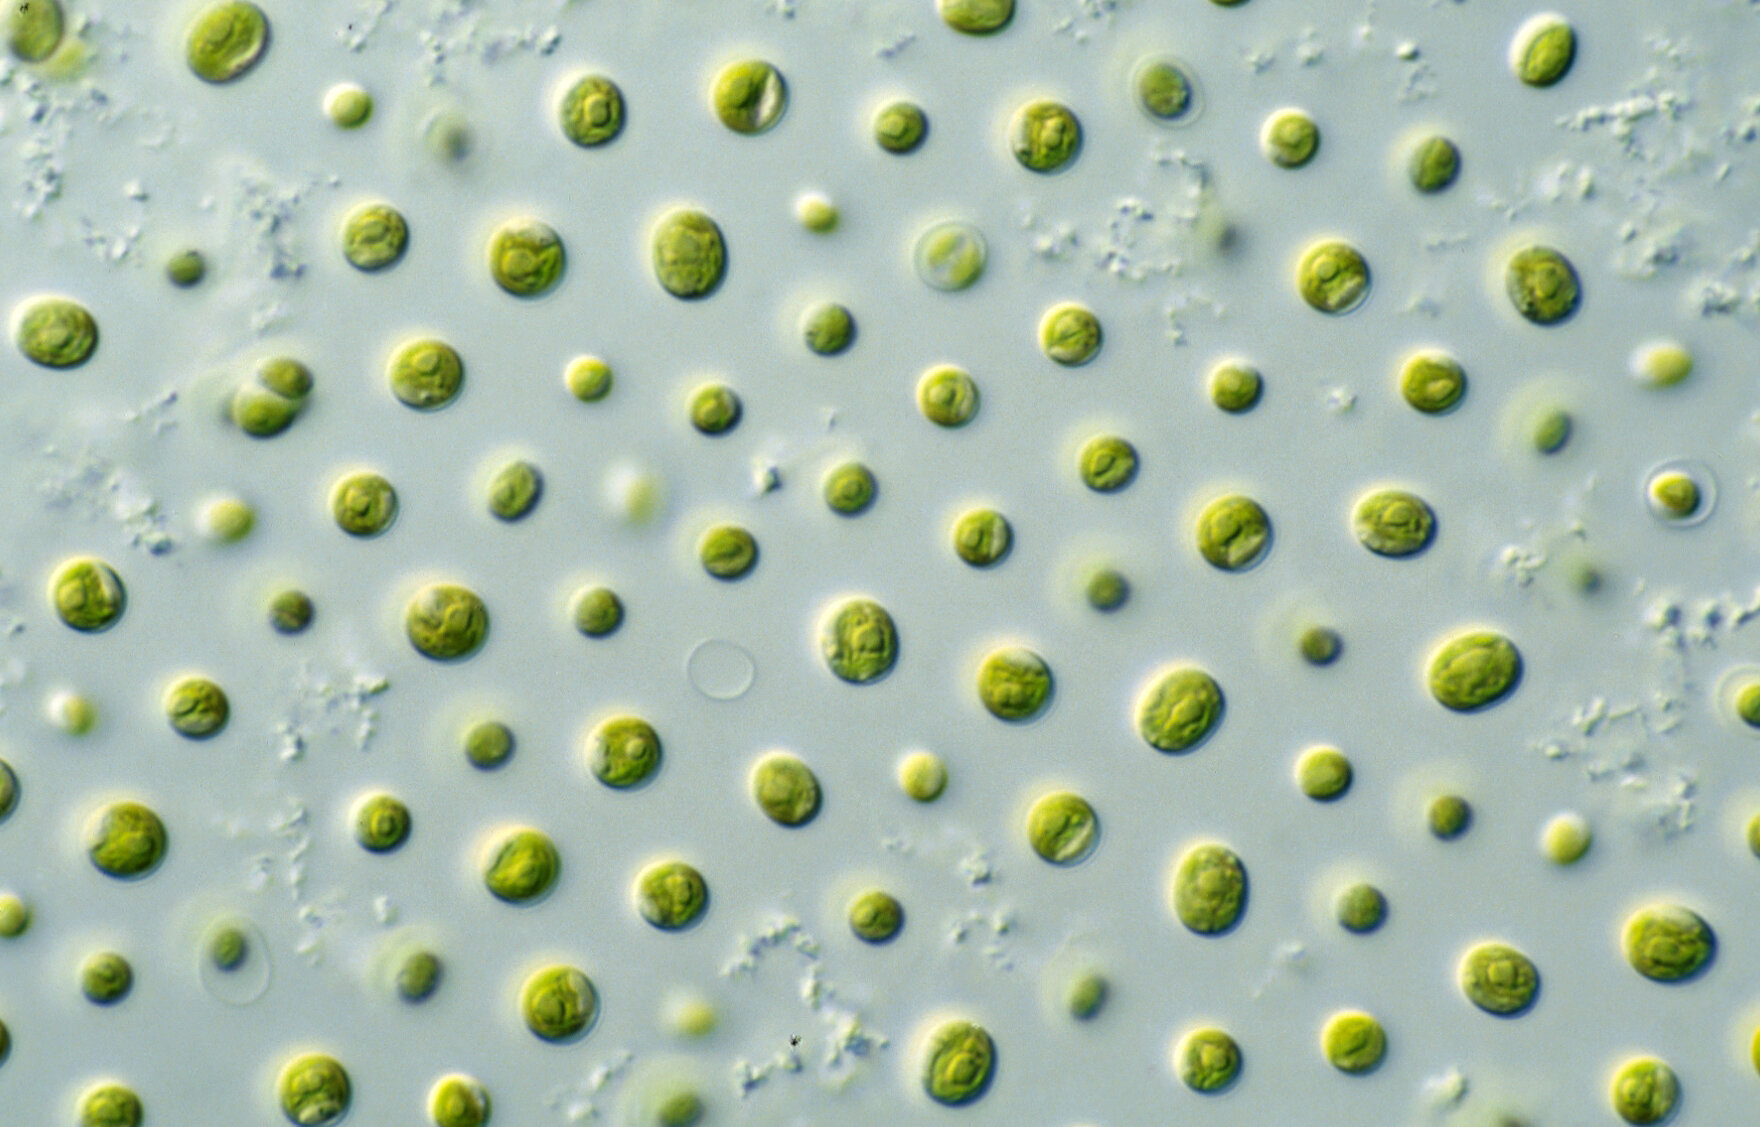 Green macroalgae Ulva: Future superfood?